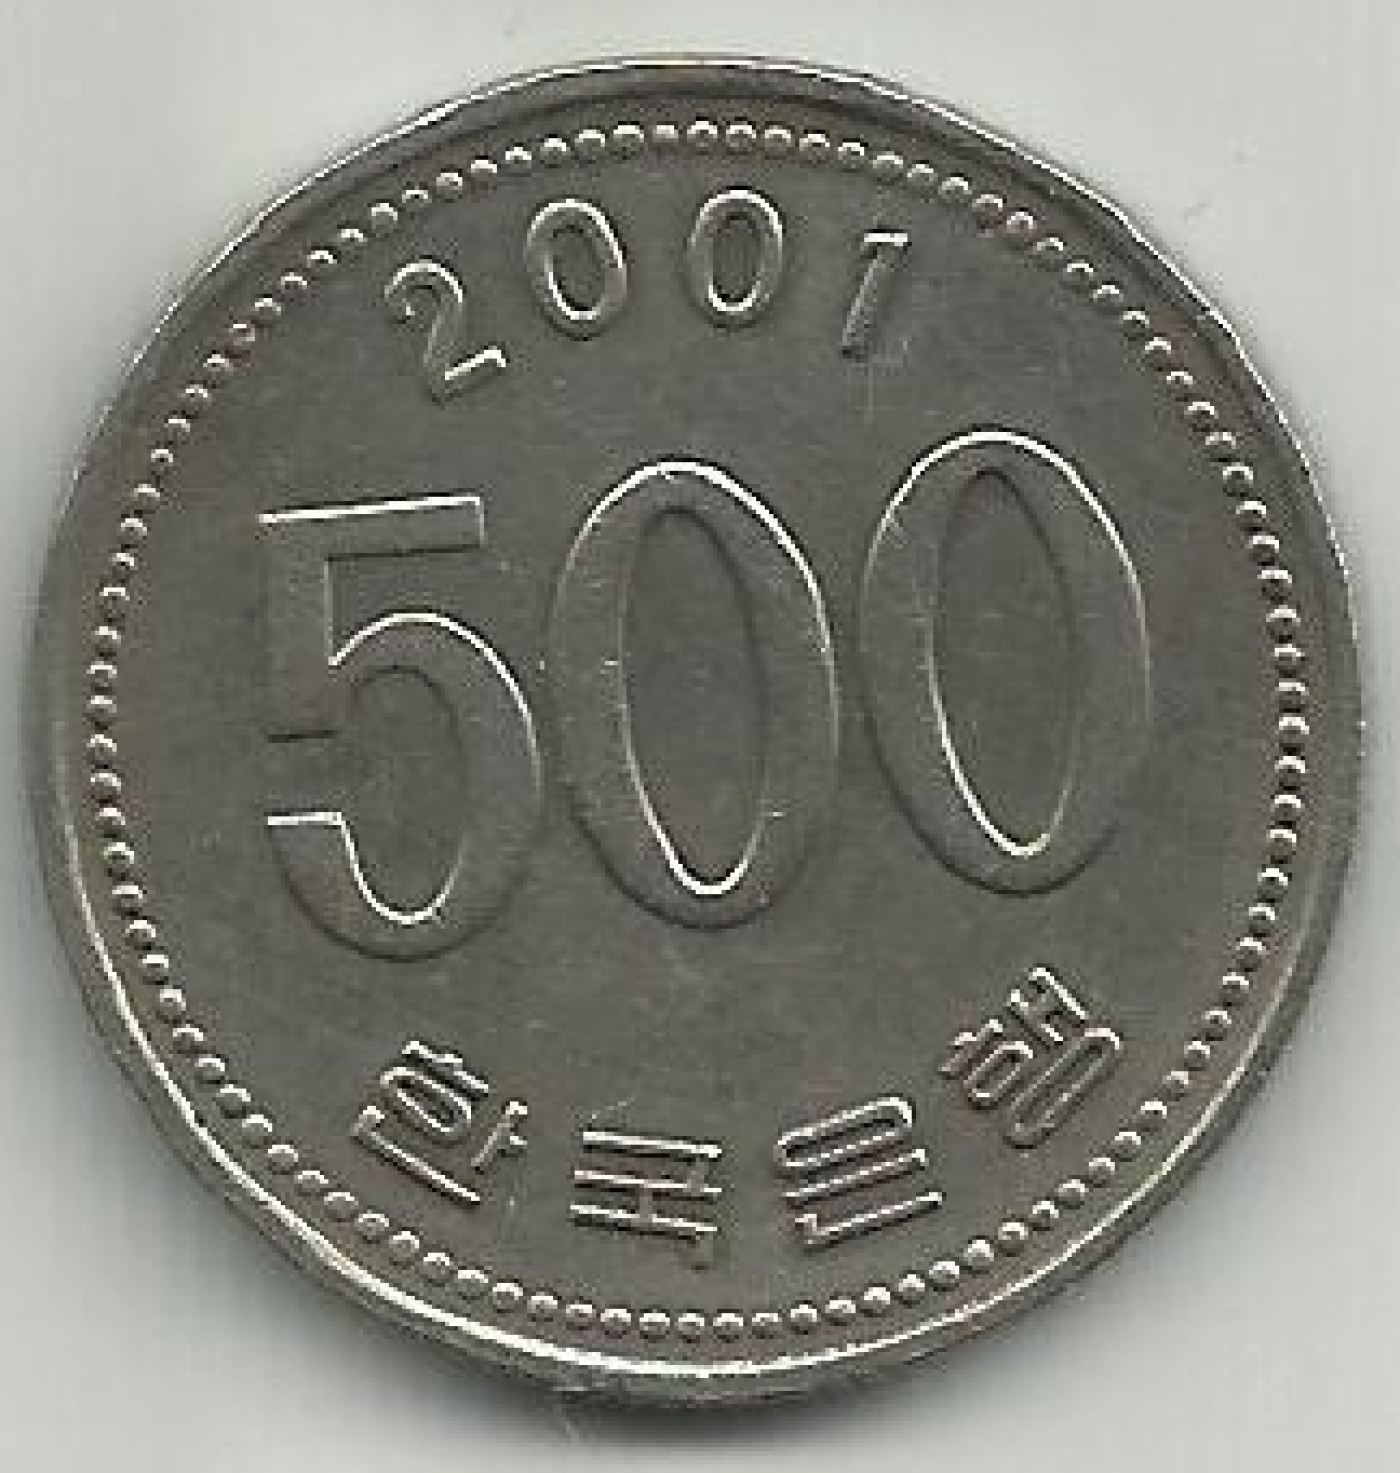 500 won coin size